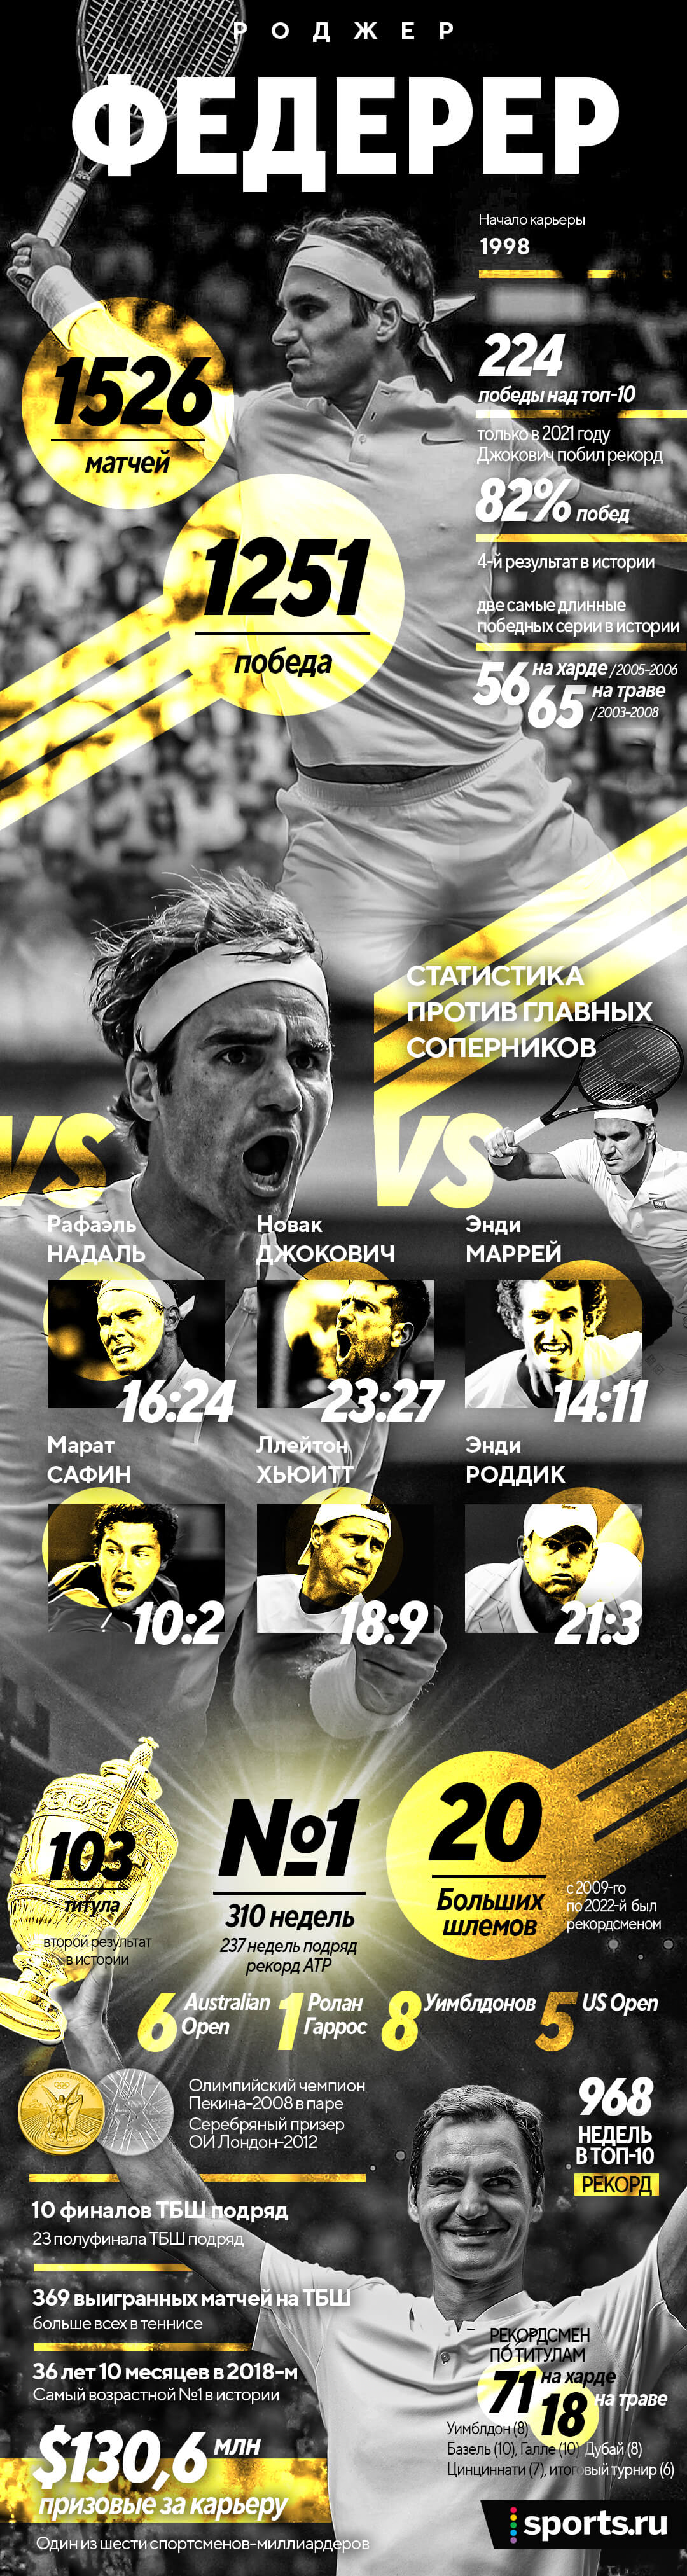 Величие Роджера Федерера на одной картинке: 20 «Больших шлемов», 103 титула и самый возрастной №1 в истории